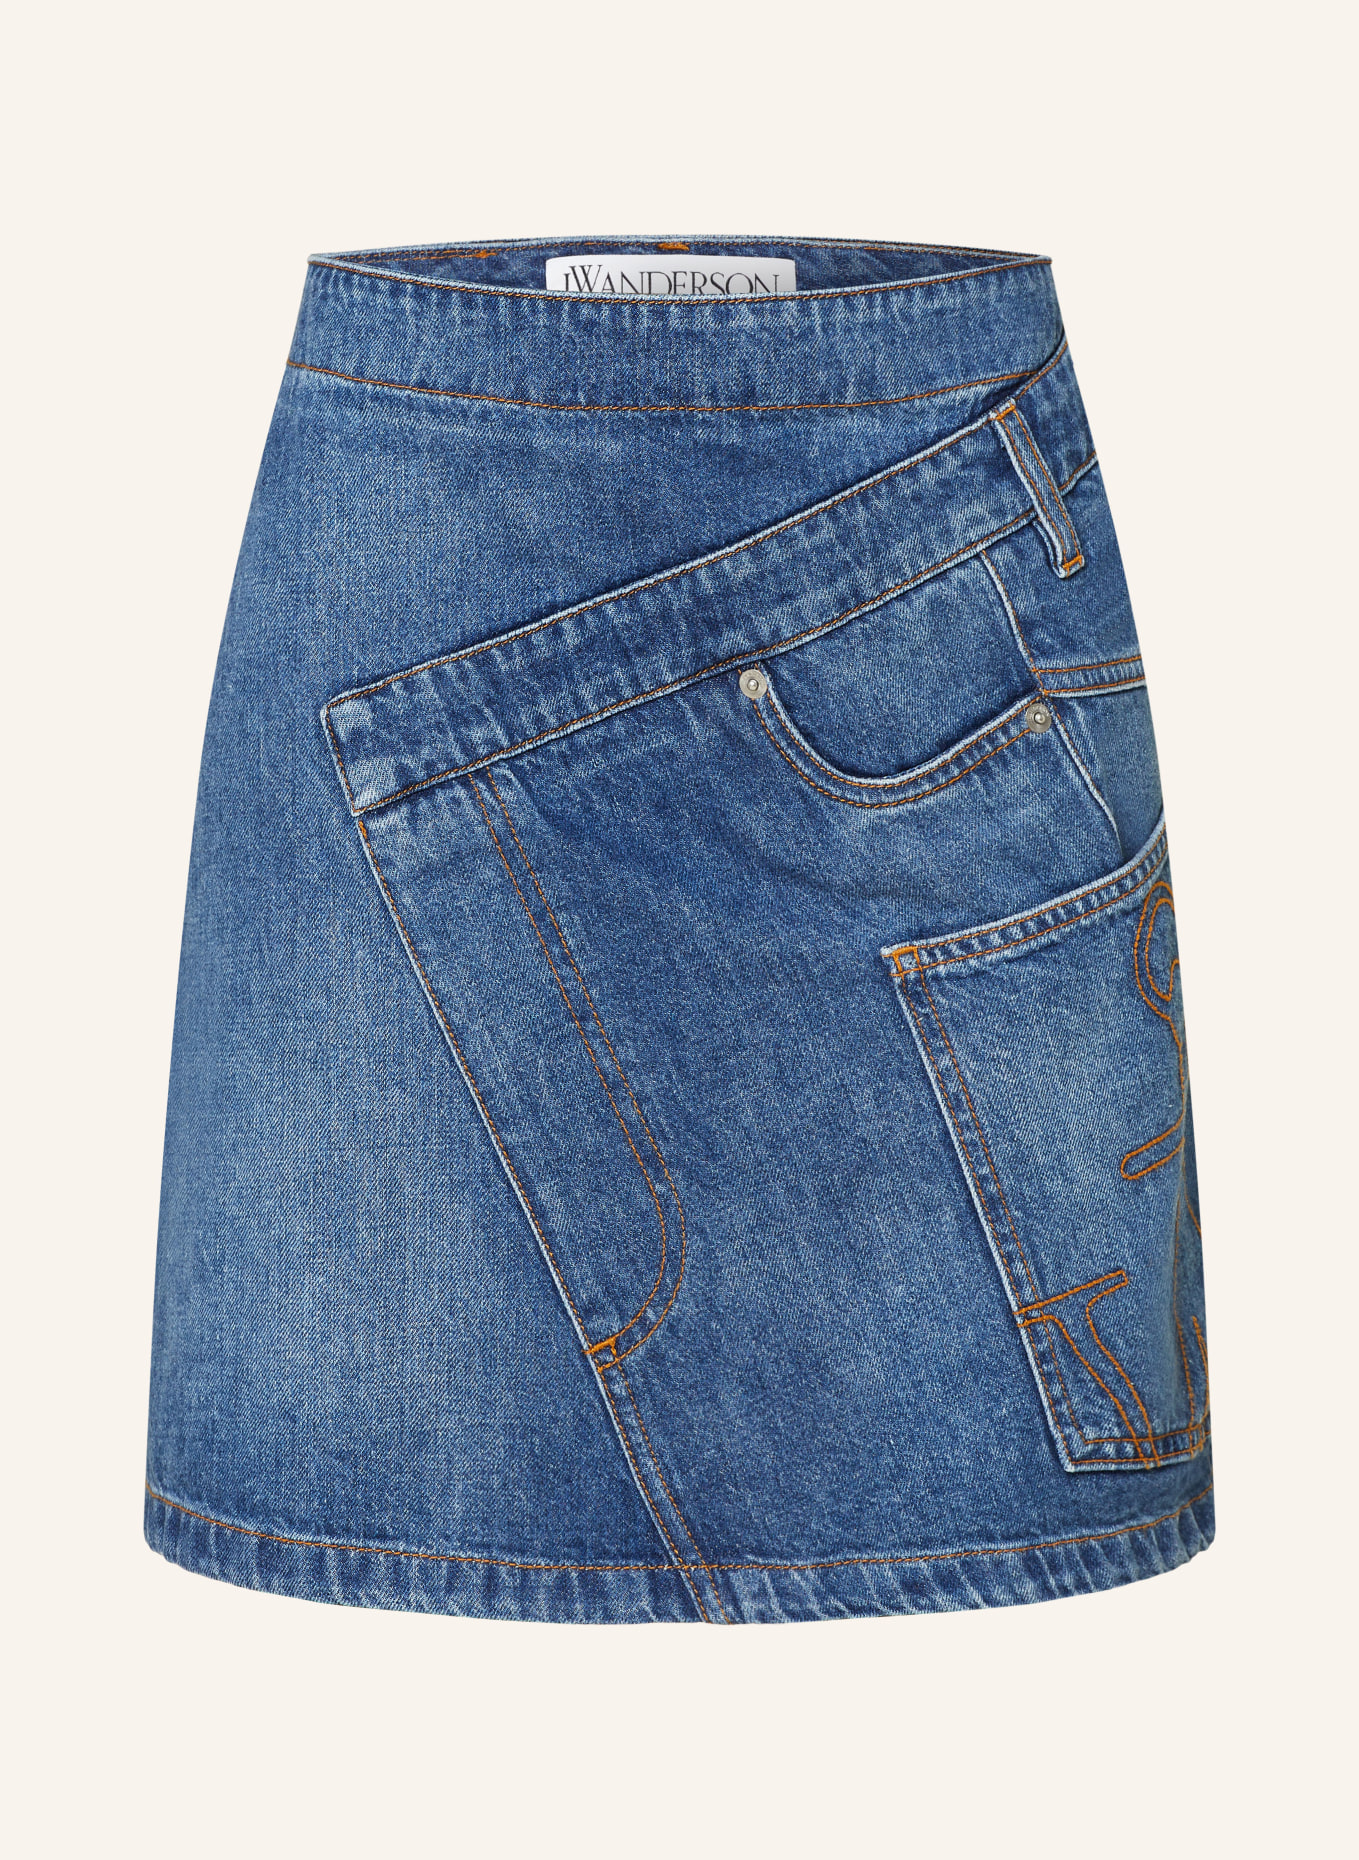 JW ANDERSON Denim skirt, Color: 804 light blue (Image 1)